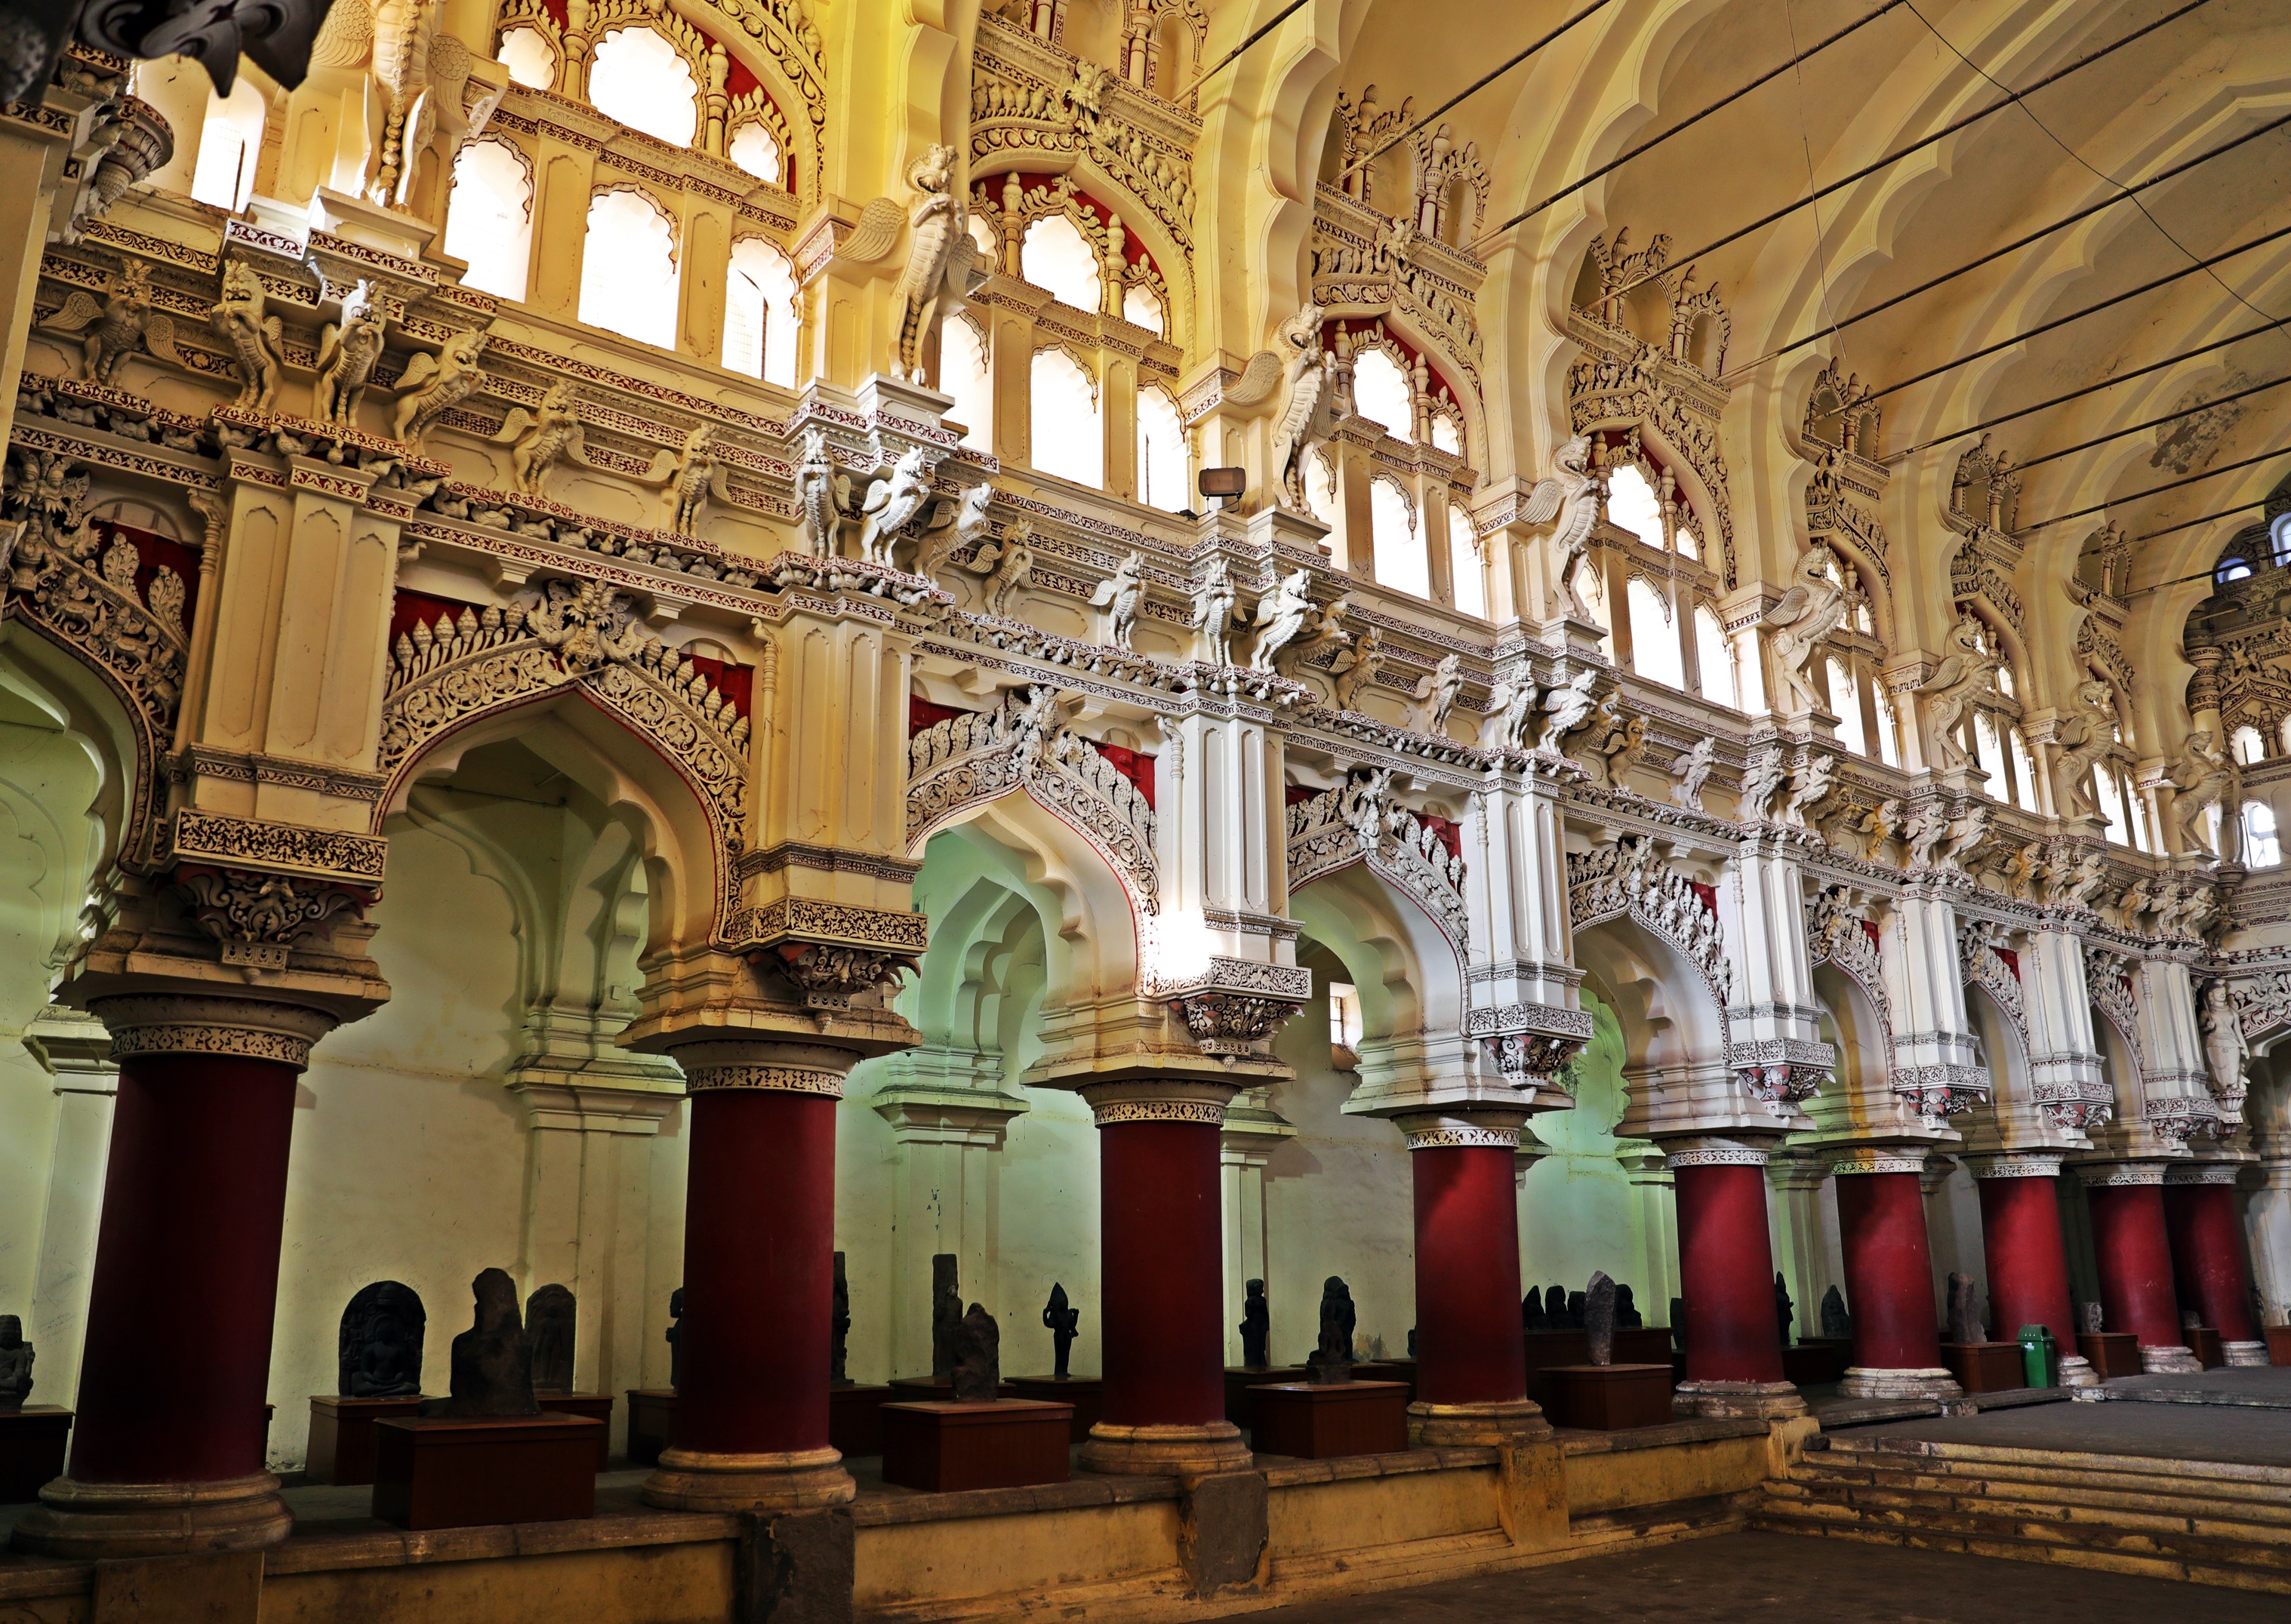 Dancing Hall, Tirumalai Nayak Palace, Madurai